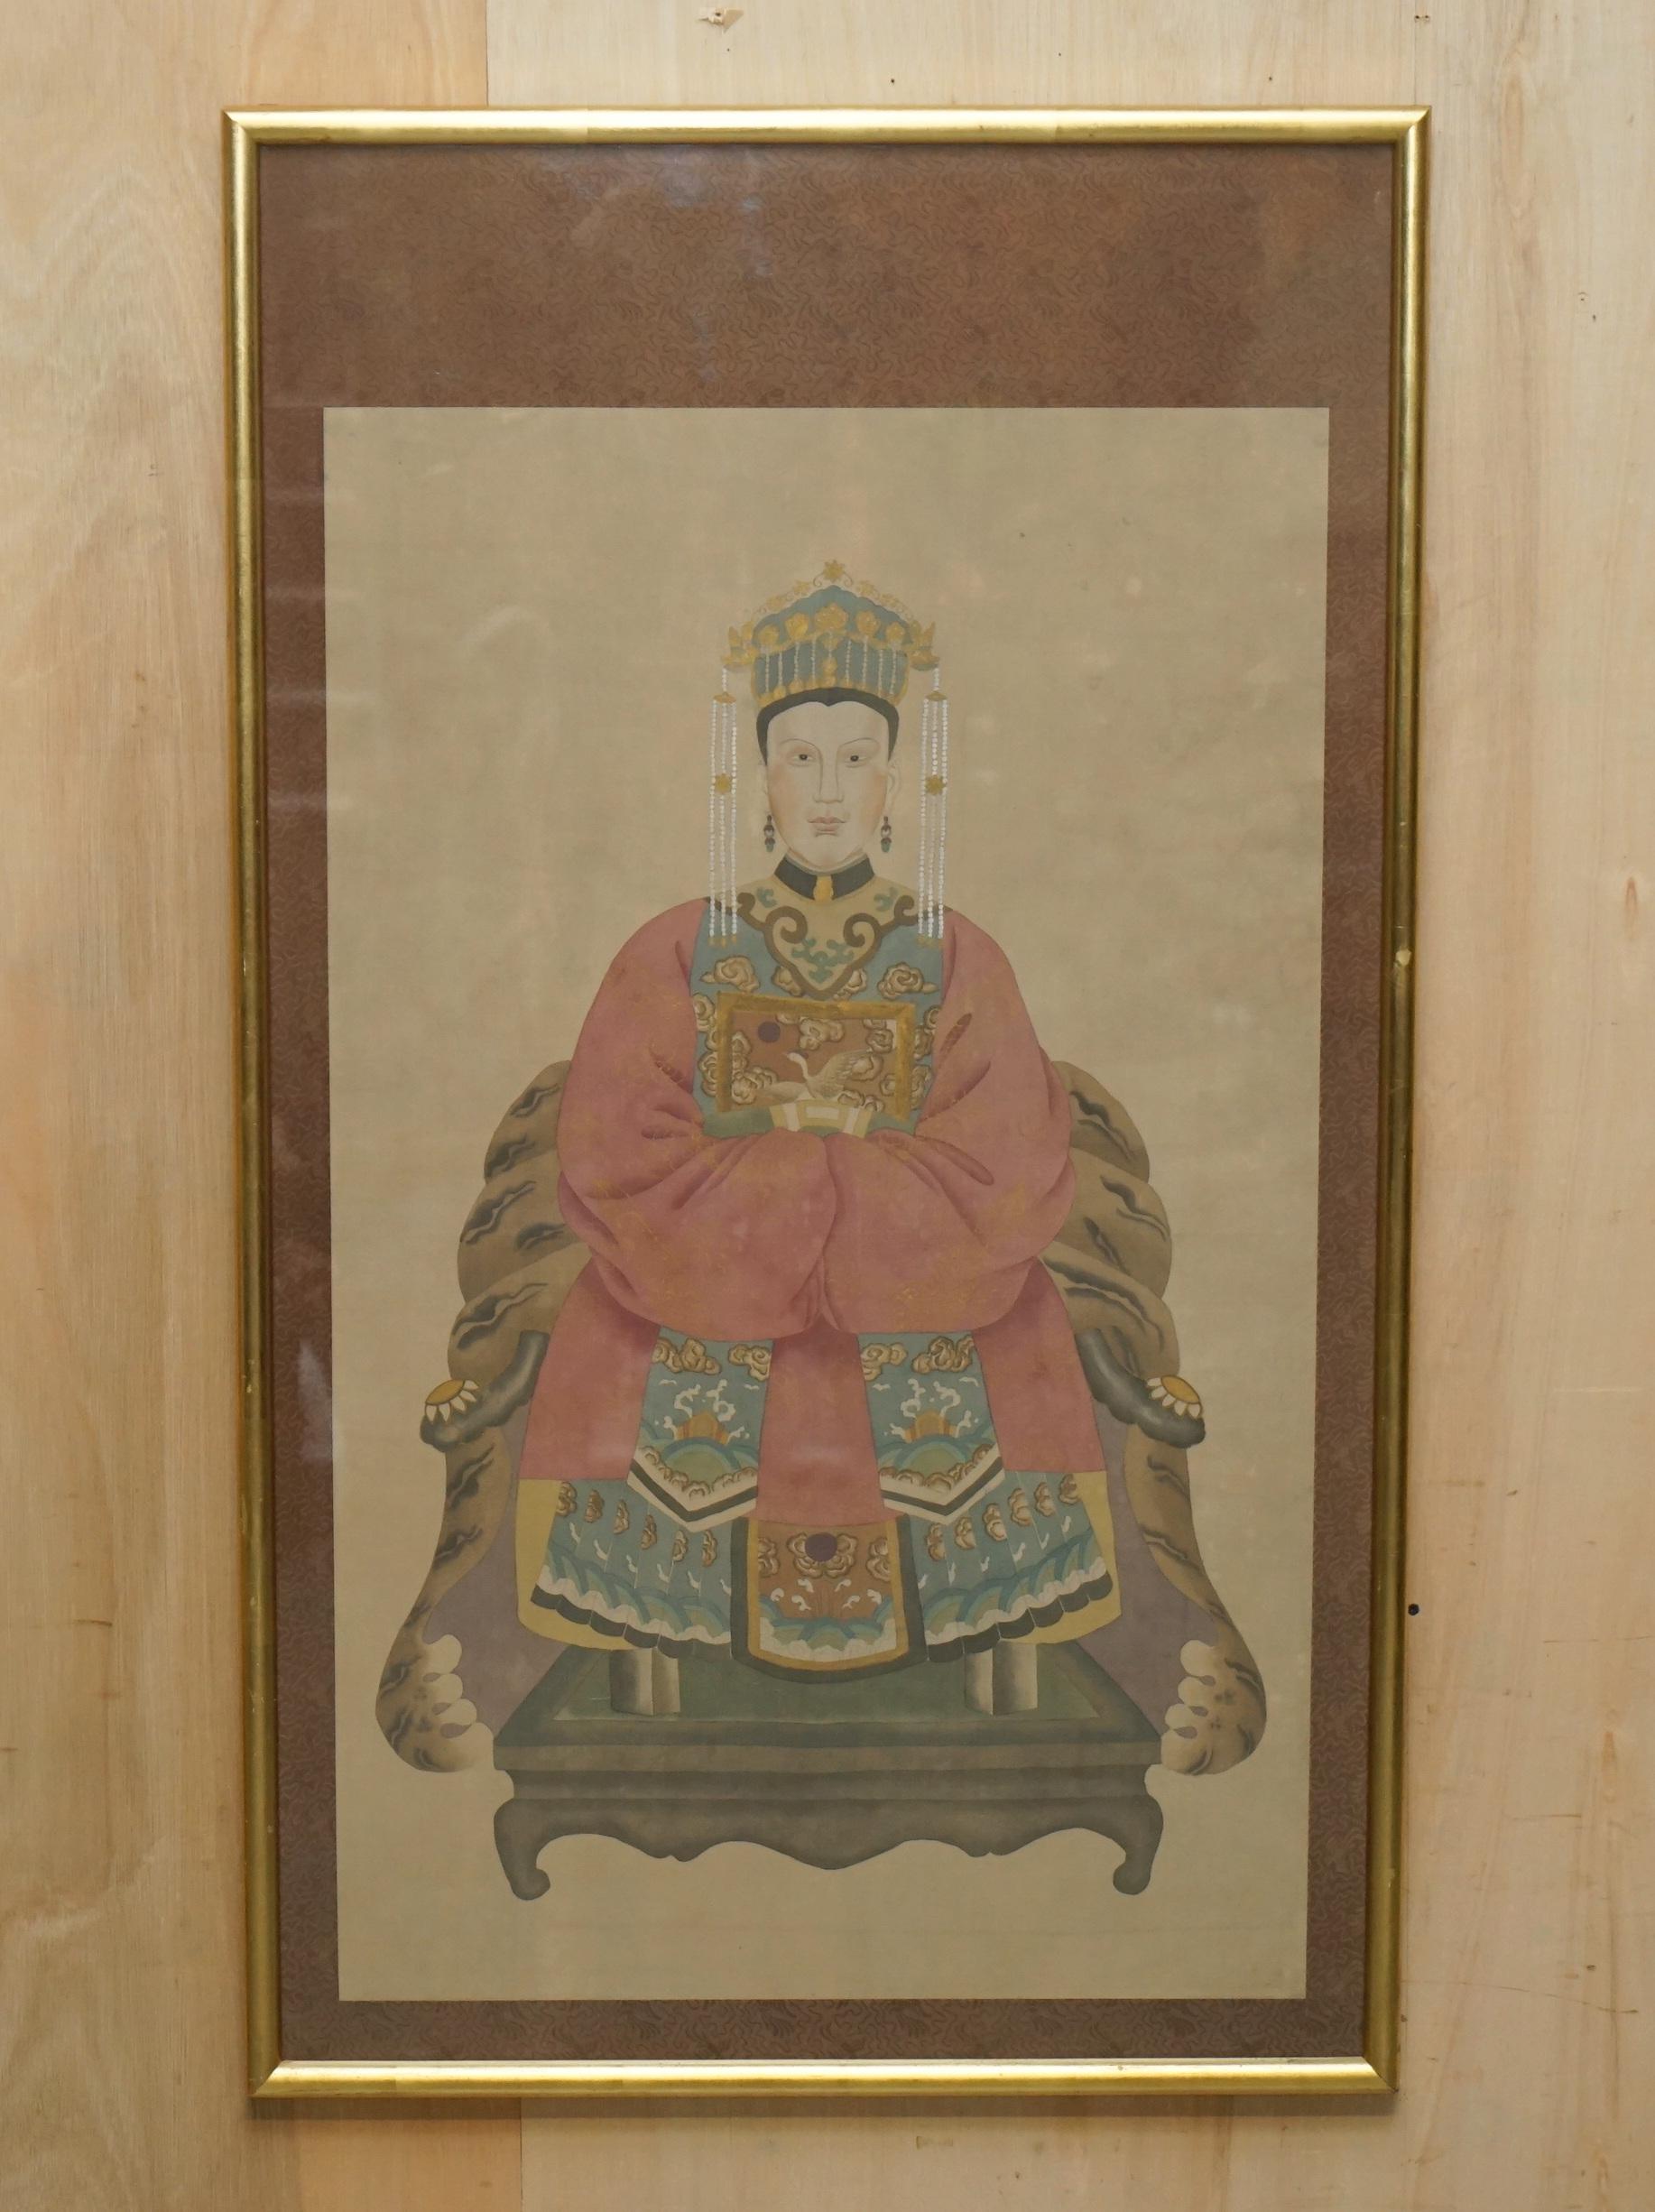 Nous sommes ravis d'offrir à la vente cette paire de portraits ancestraux chinois anciens sur papier original avec de jolis cadres vitrés.

J'ai une petite sélection de ces listés sous mes autres articles, il y a quelques singles, doubles moyen,